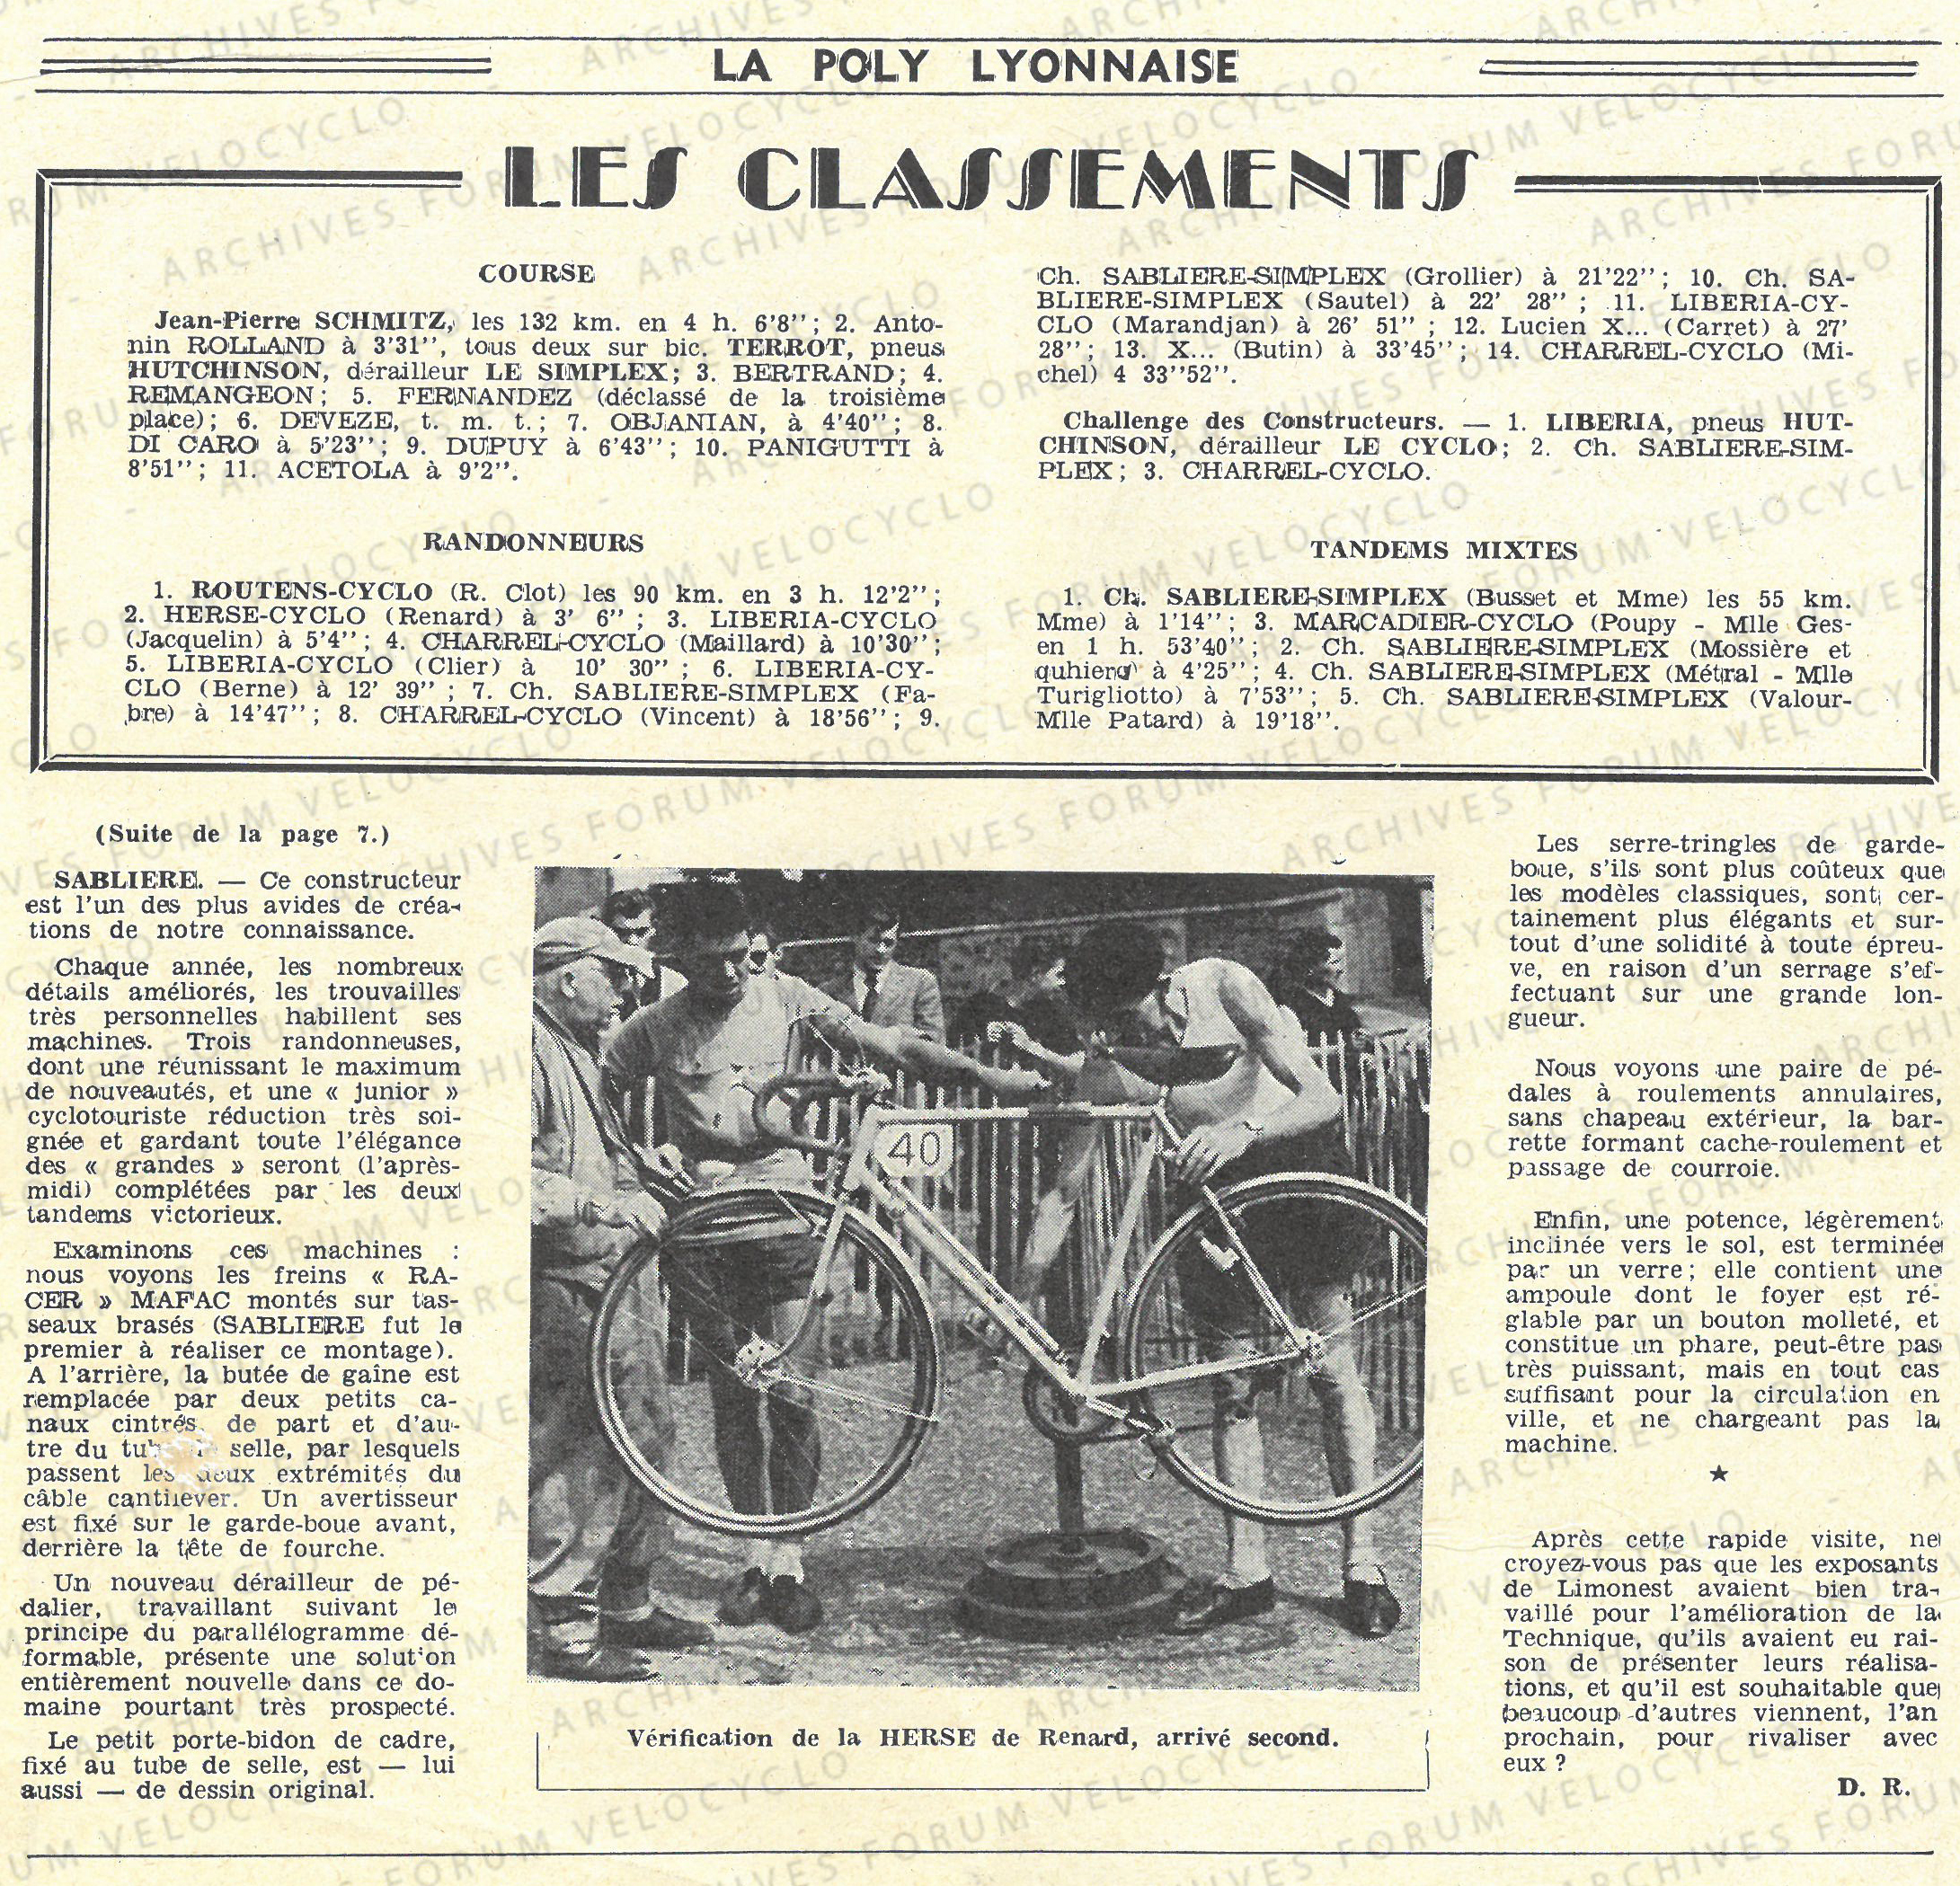 article POLY LYON 1954 SABLIERE VELOCYCLO